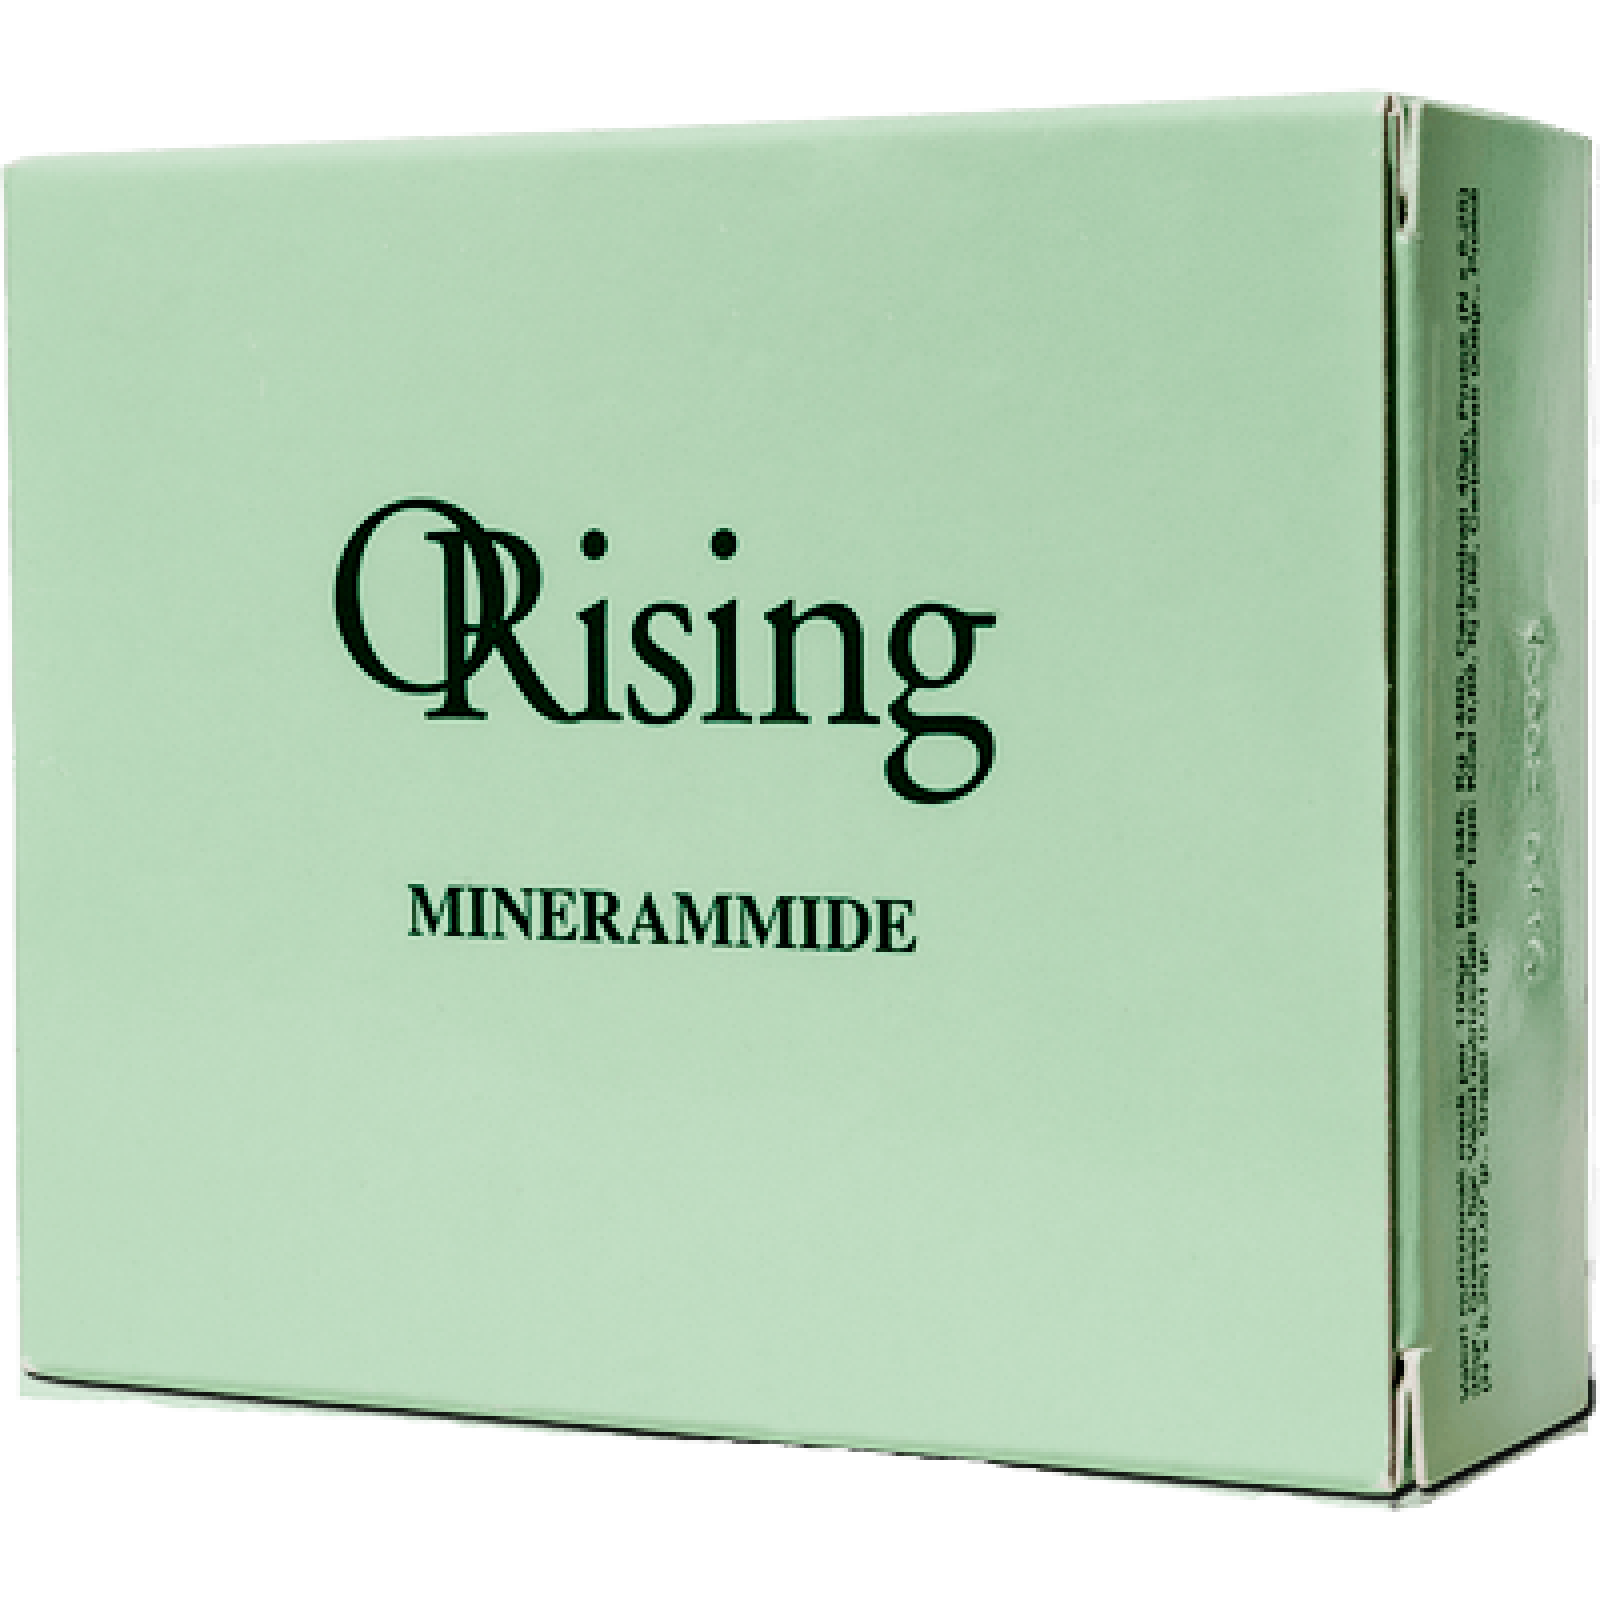 Вітаміни-Мінерамміди для насичення масок, ампул і шампунів Orising Minerammide, 30 капсул